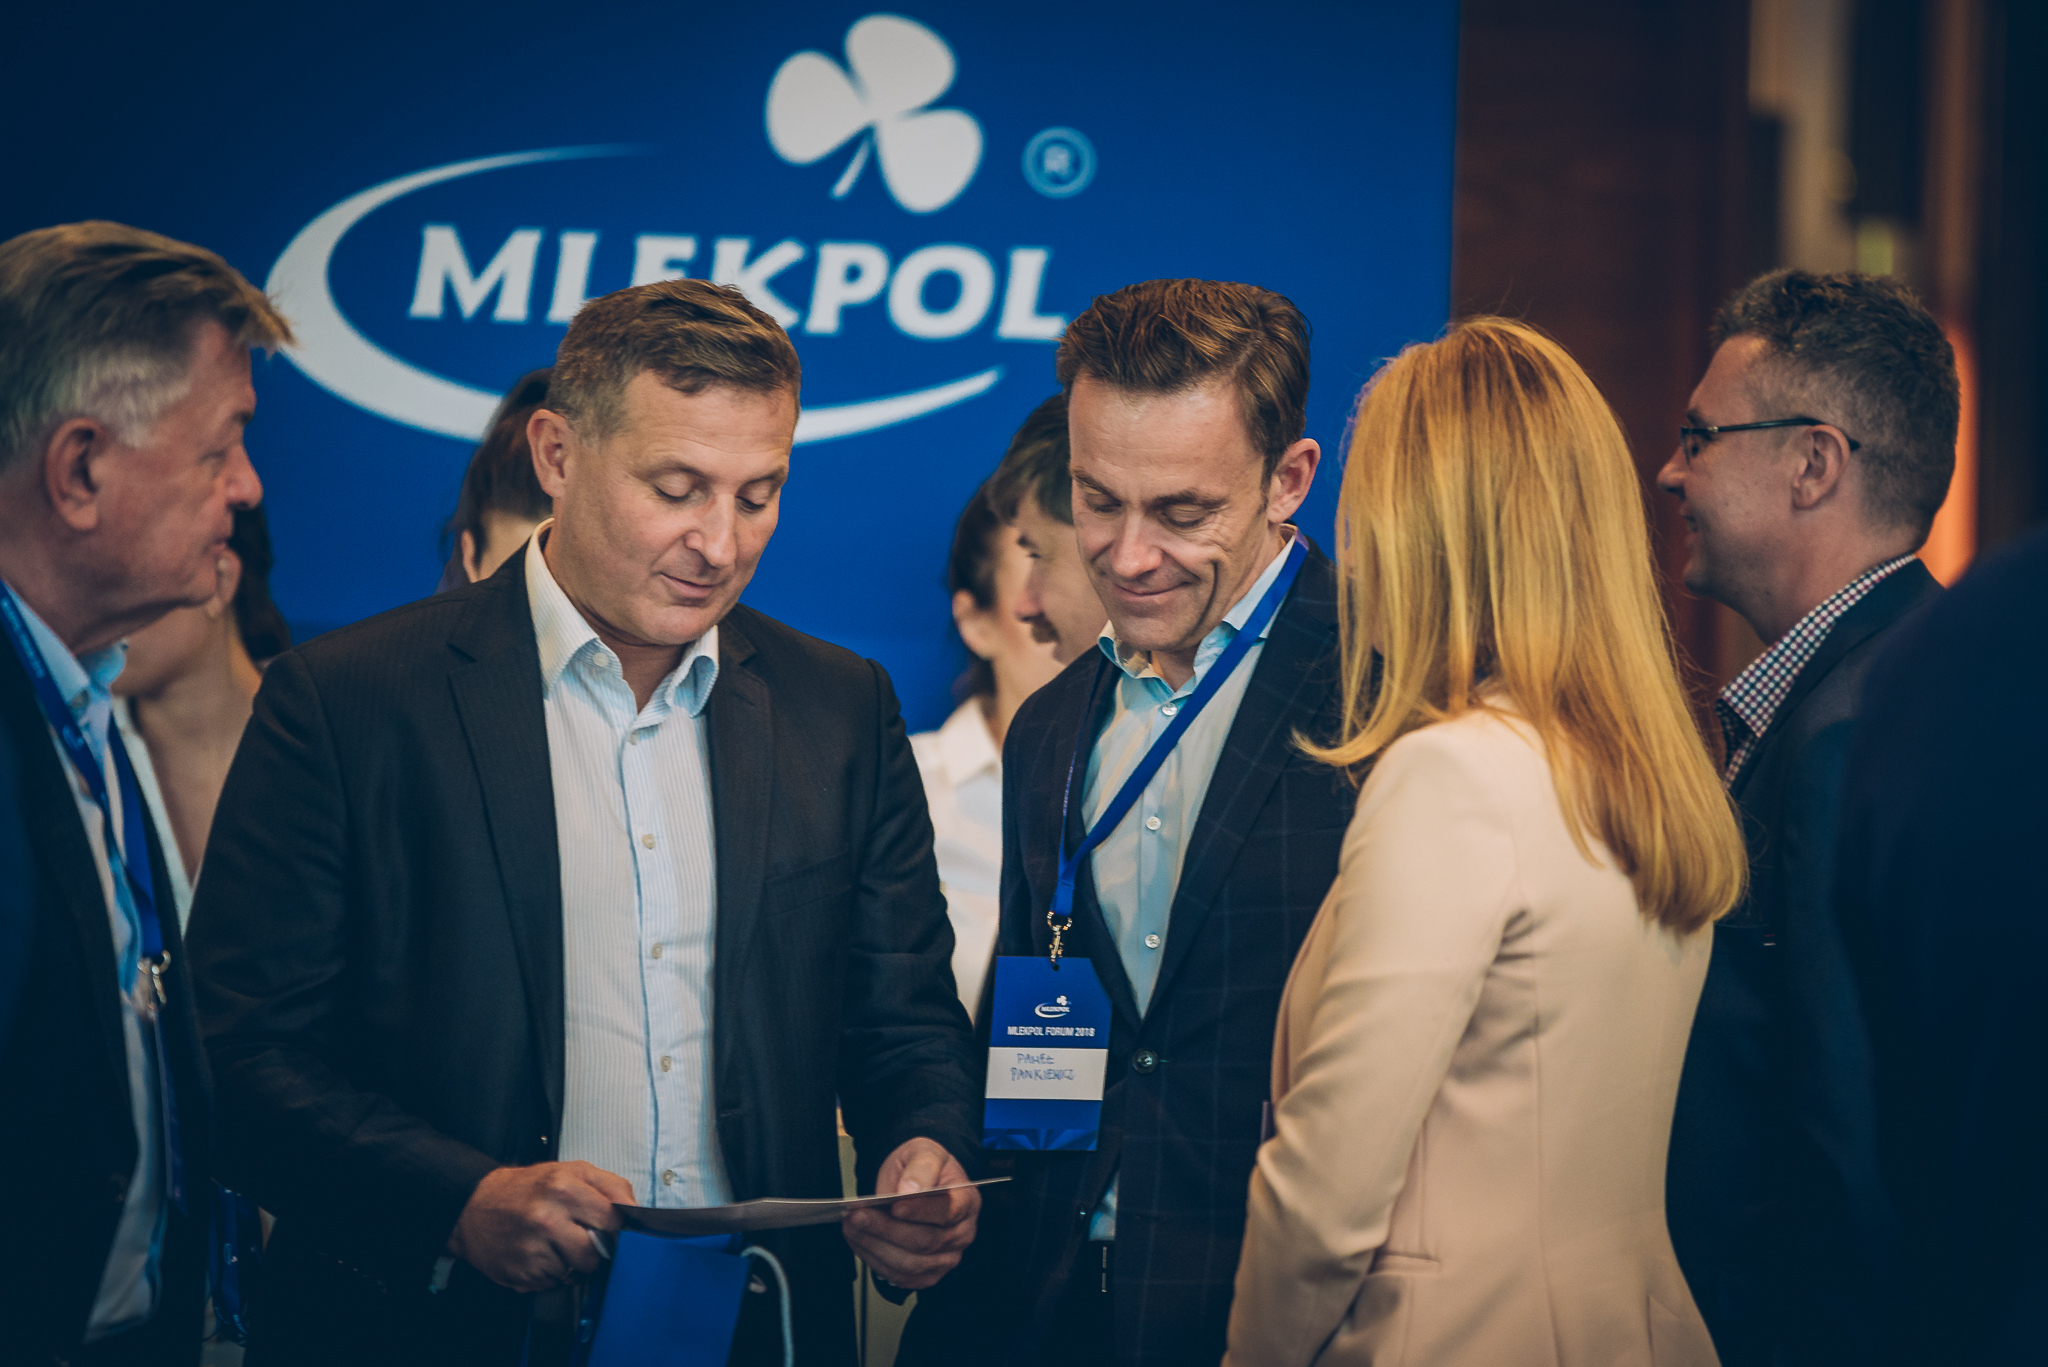 300 przedstawicieli branży mleczarskiej na Mlekpol Forum 2018